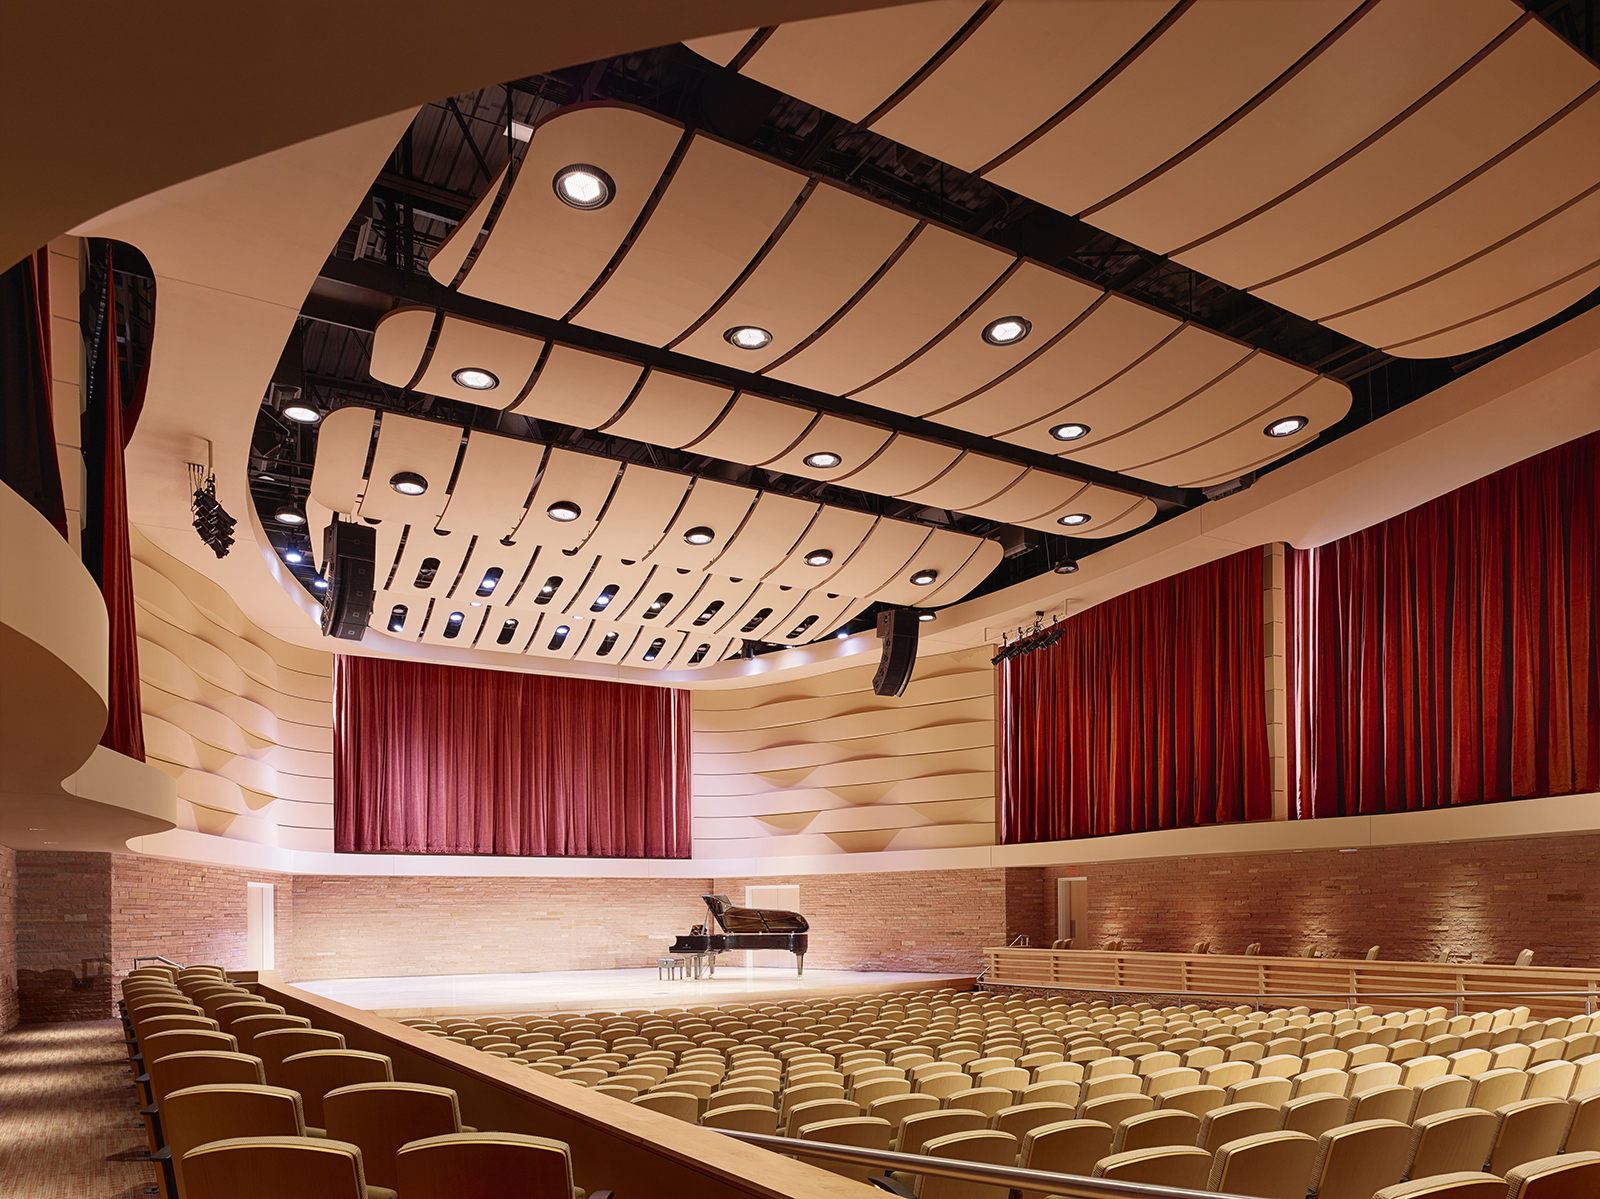 Casper College Music Building Auditorium 2